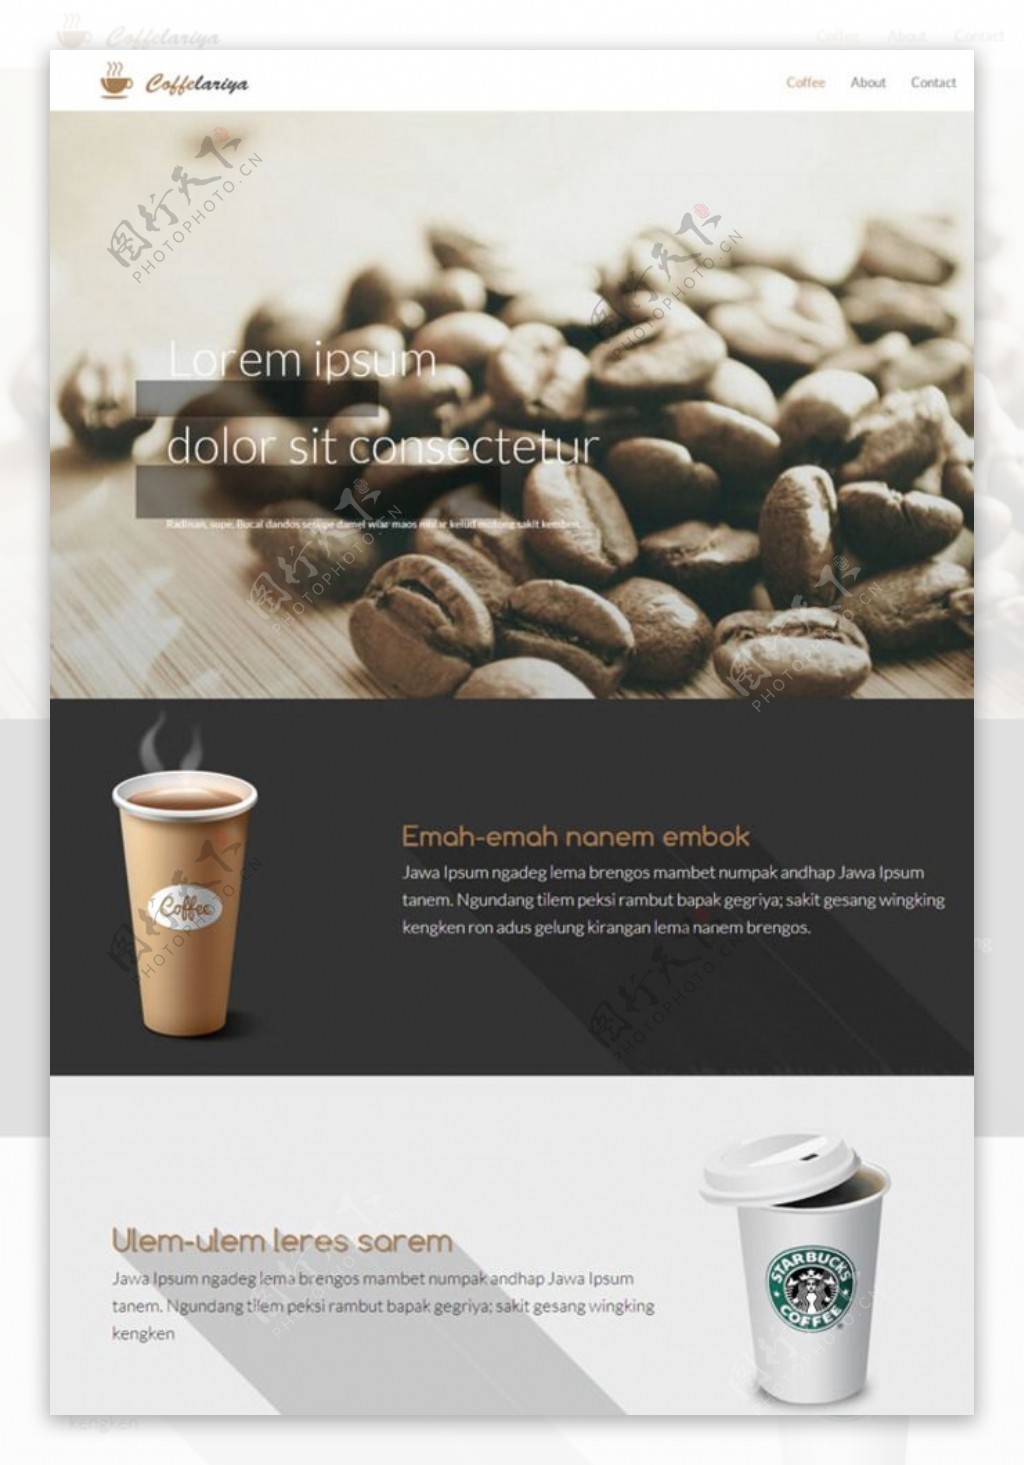 星巴克咖啡饮品网页图片